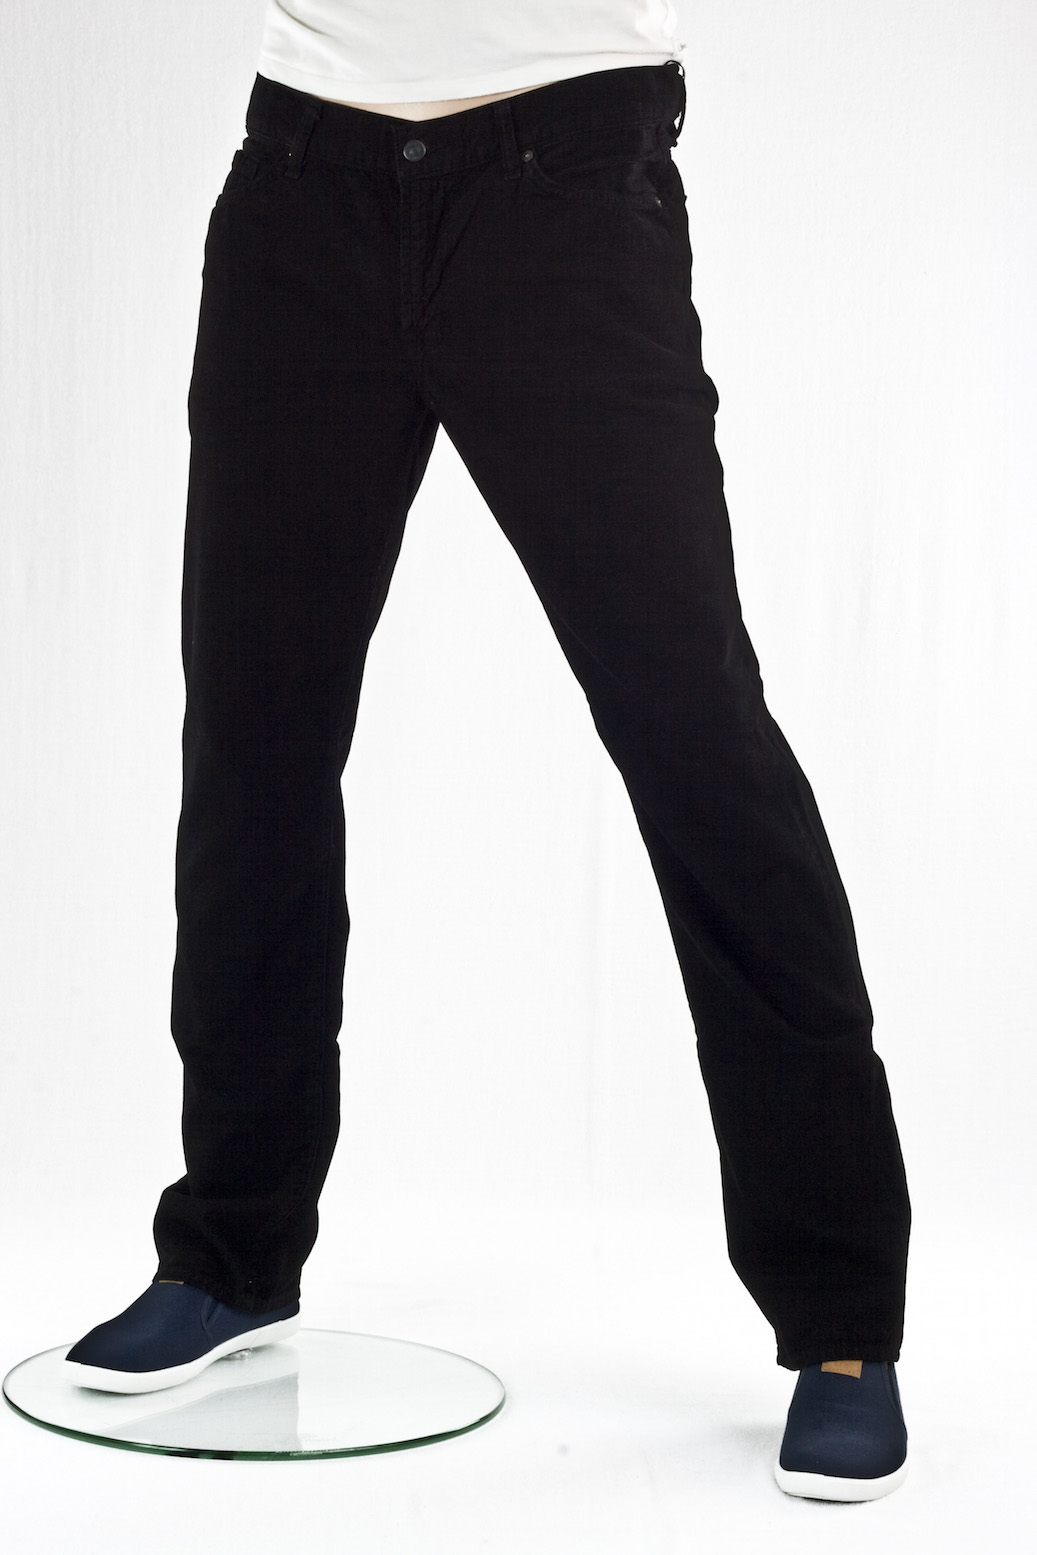 Мужские джинсы 7 for all Mankind вельветовые прямые Black velvet lean